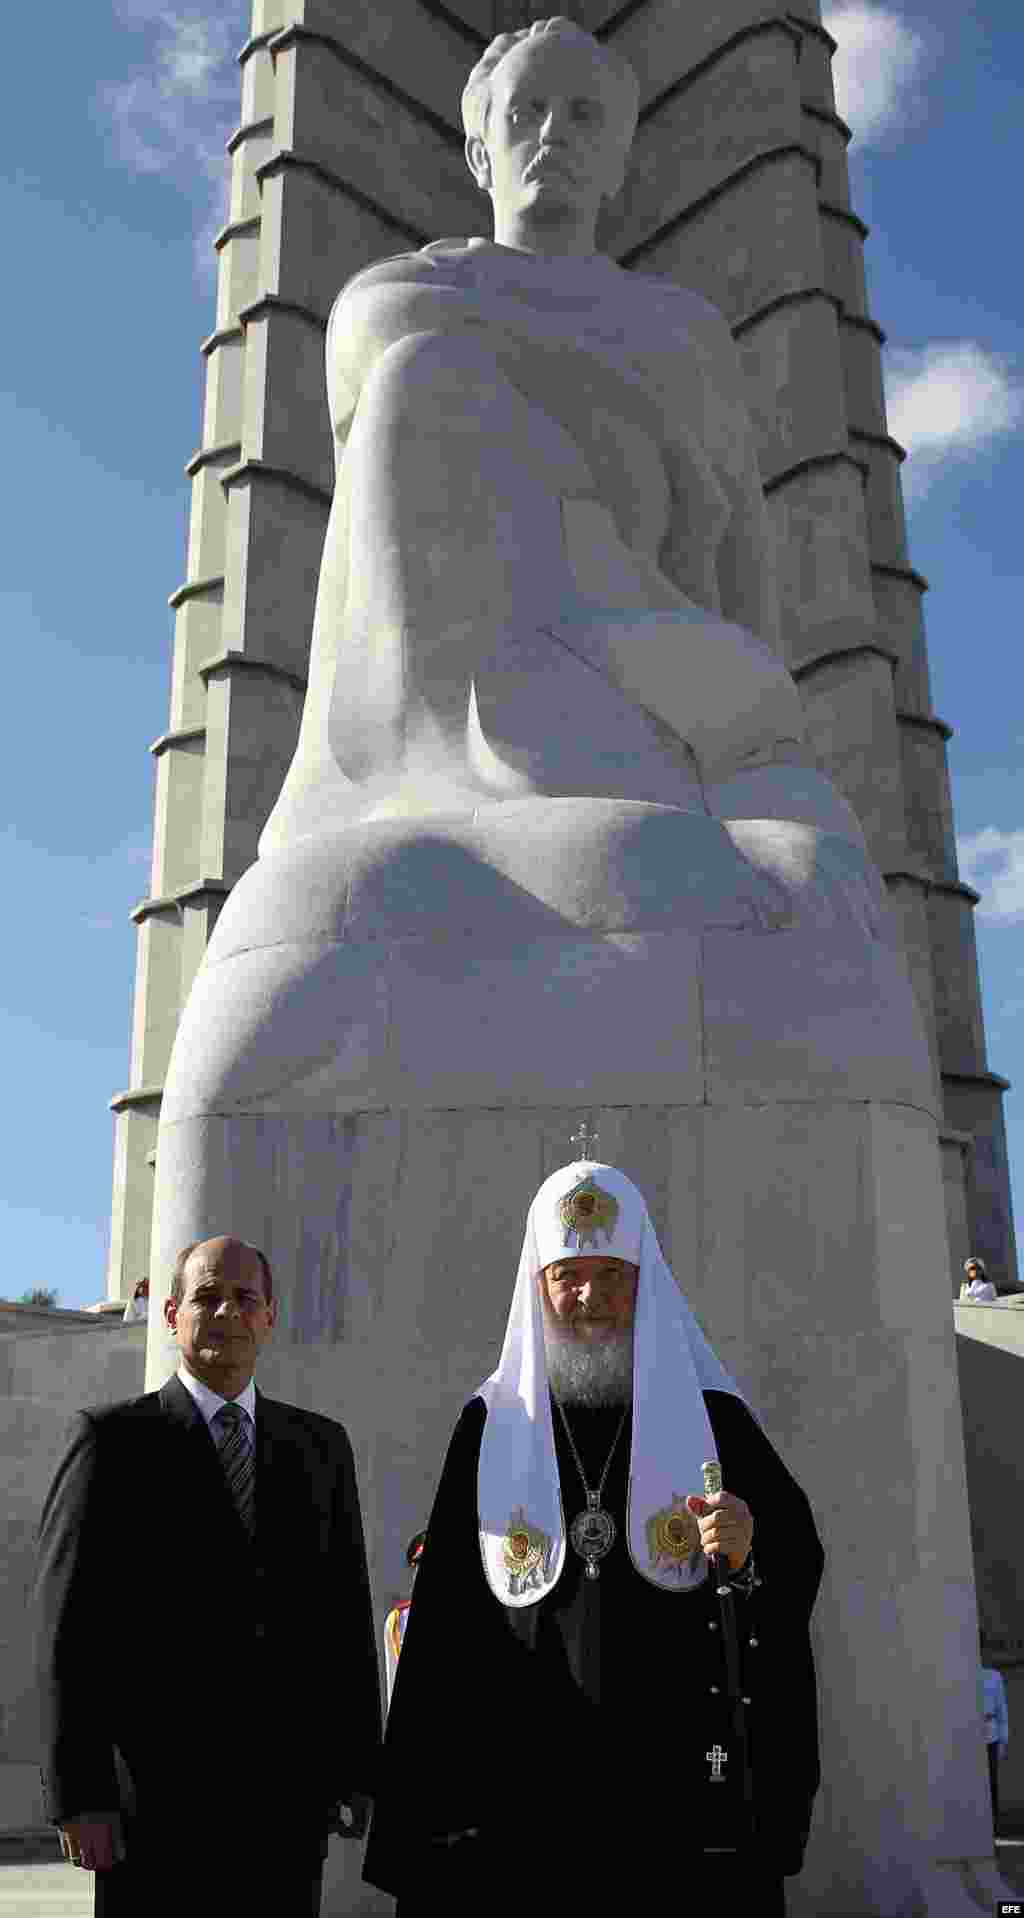 El patriarca de la Iglesia ortodoxa rusa, Kiril, coloca ofrenda en monumento a José Martí.